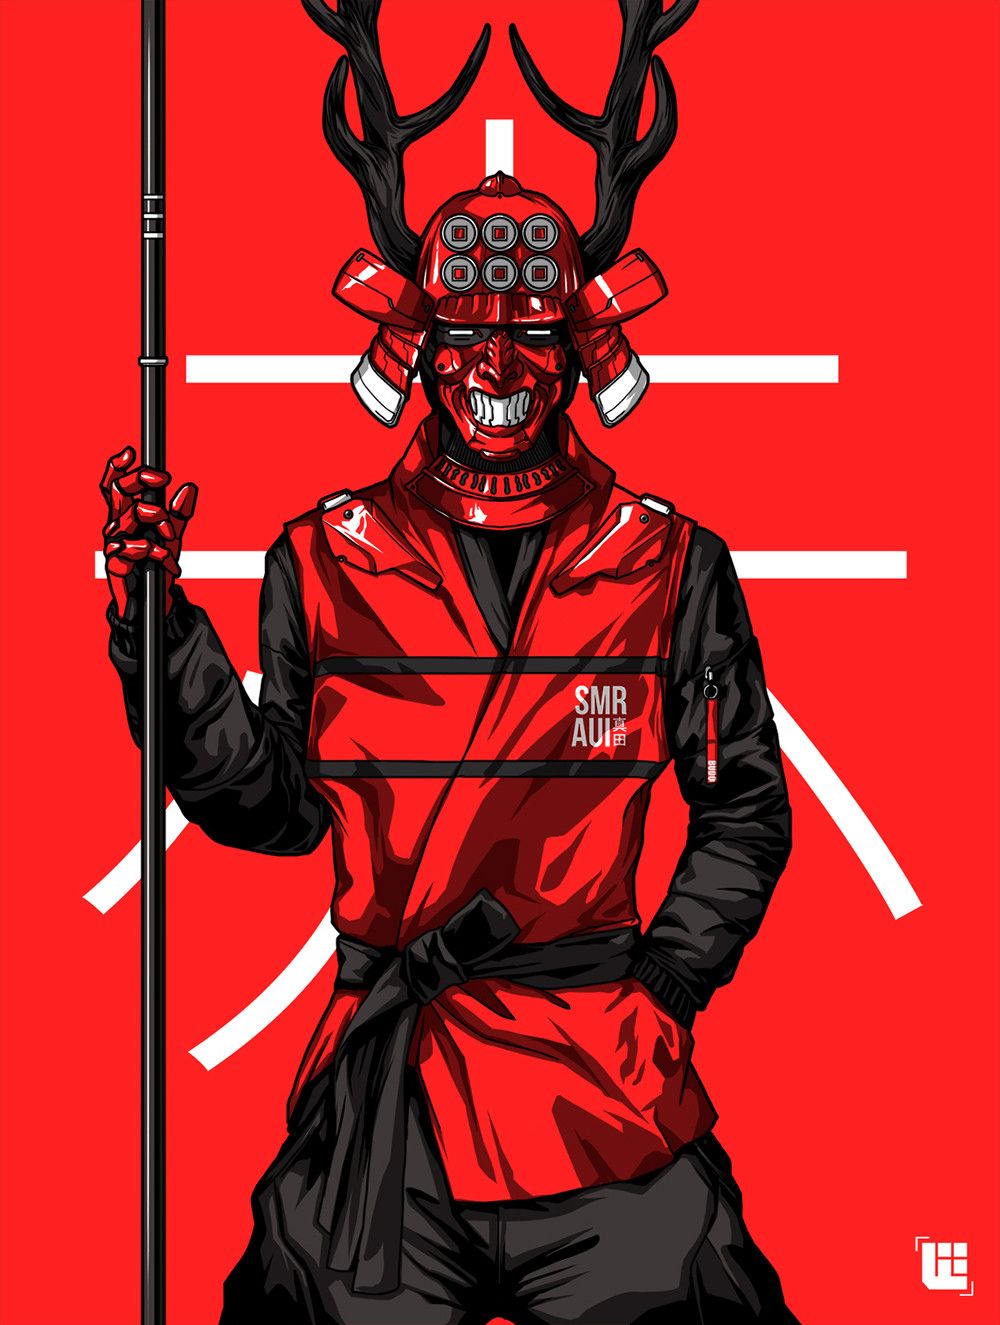 Wallpaper, Bryan Lie, men, samurai, red background, coats, Masked, staff, horns 1000x1325